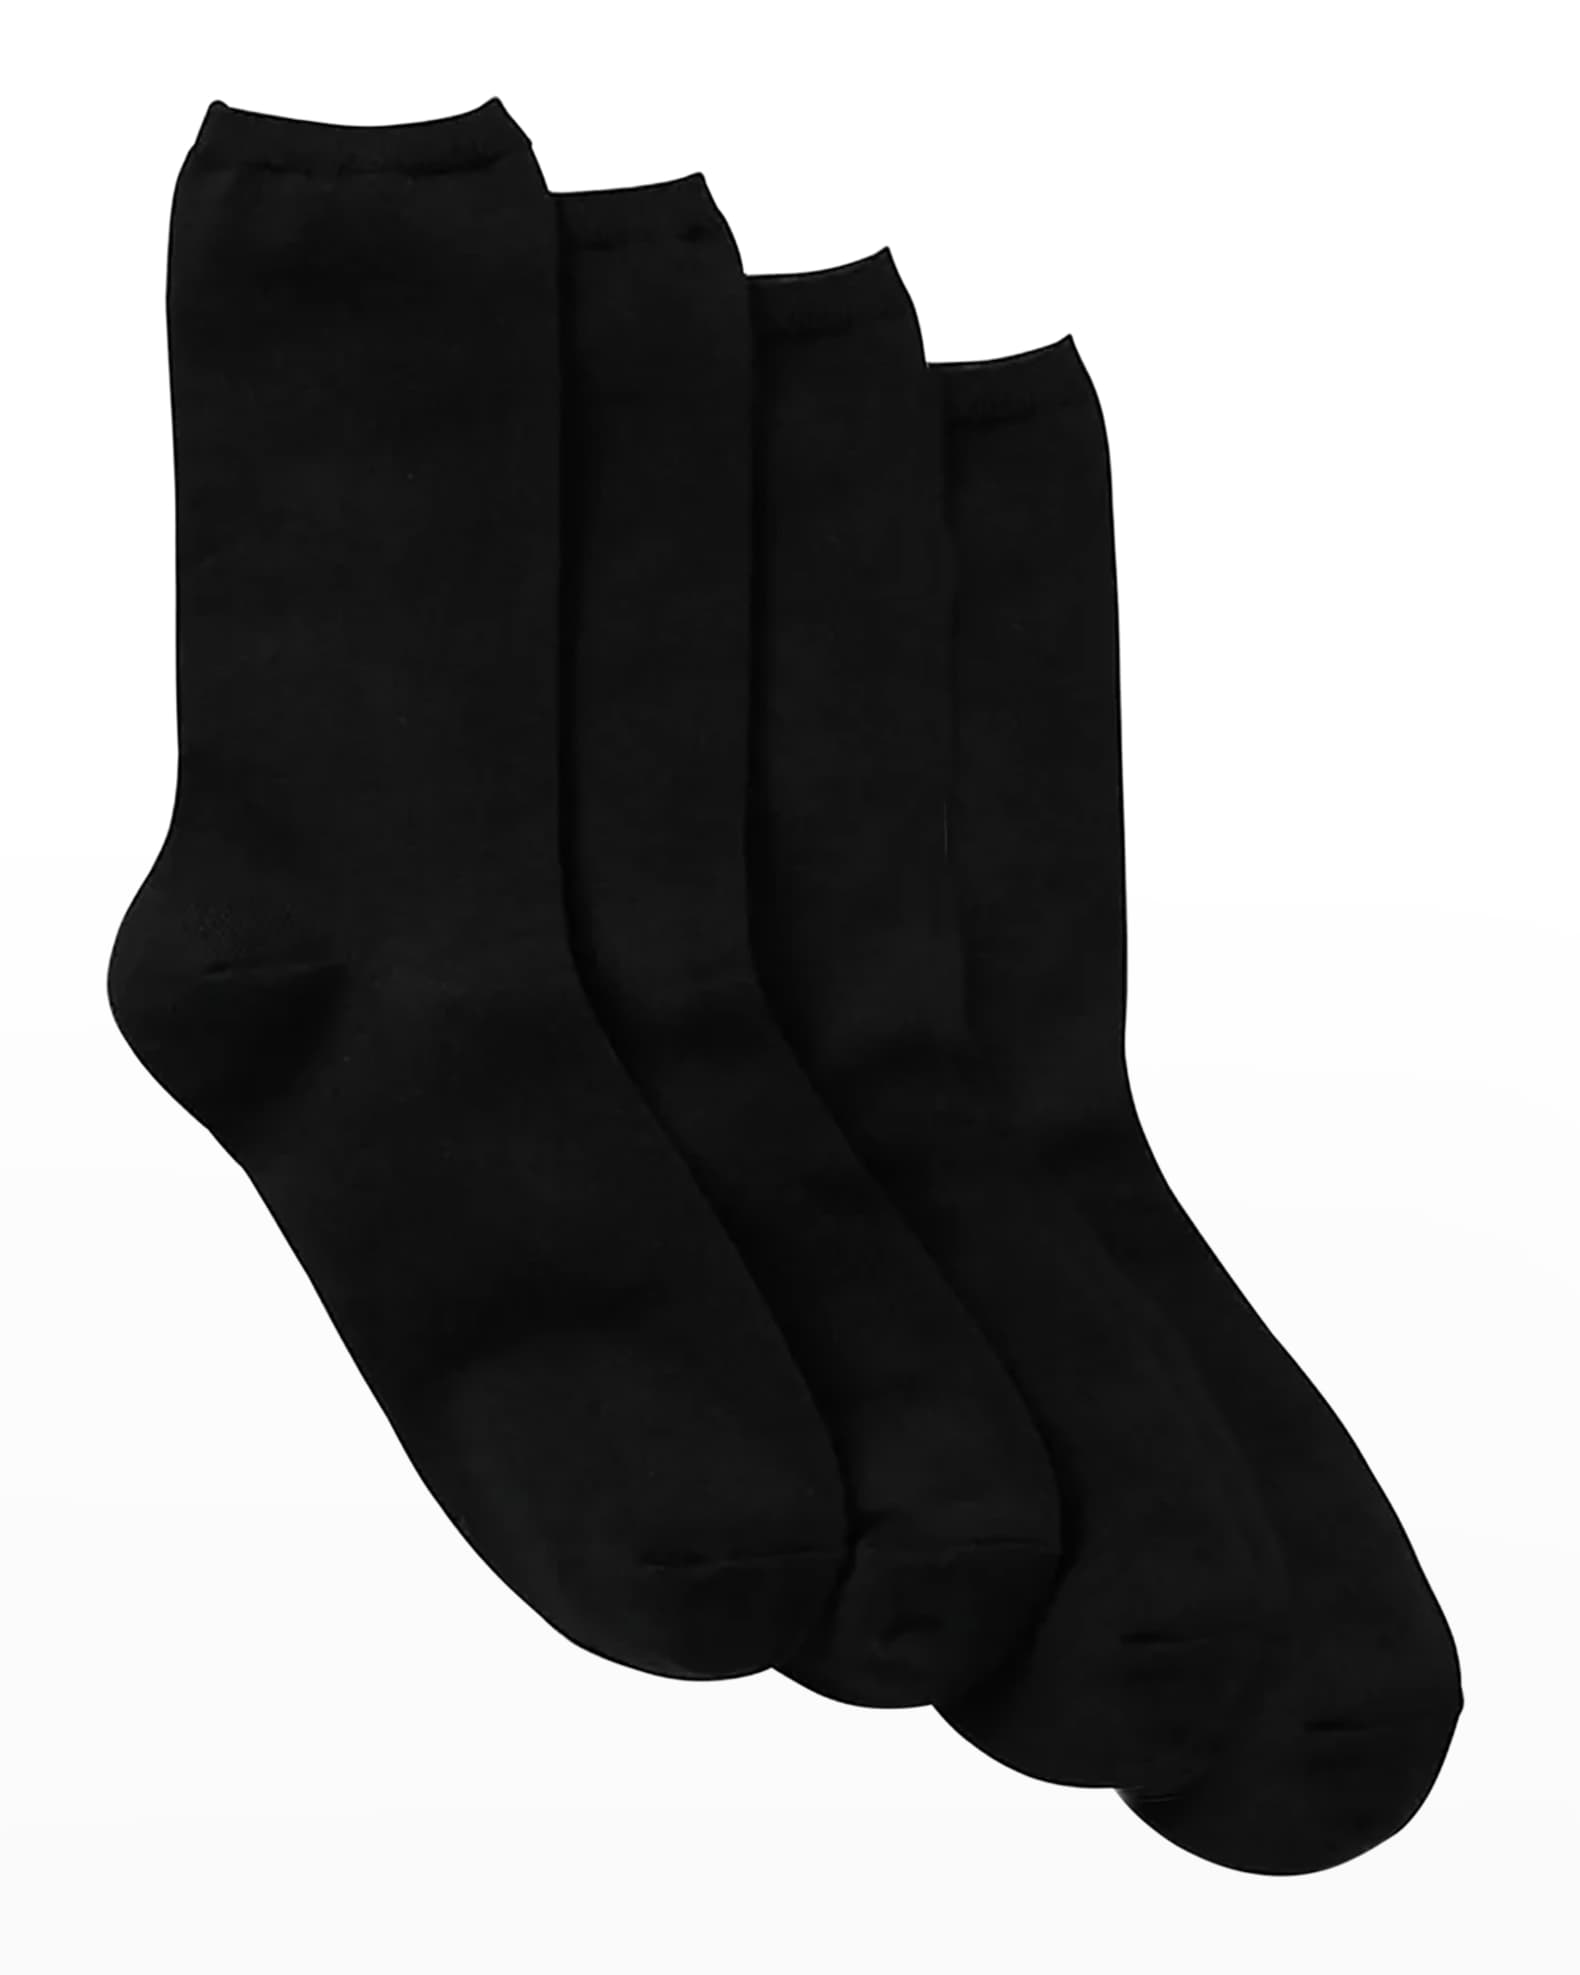 Checkered Socks And Loewe Logo Black And White - 5 Pairs